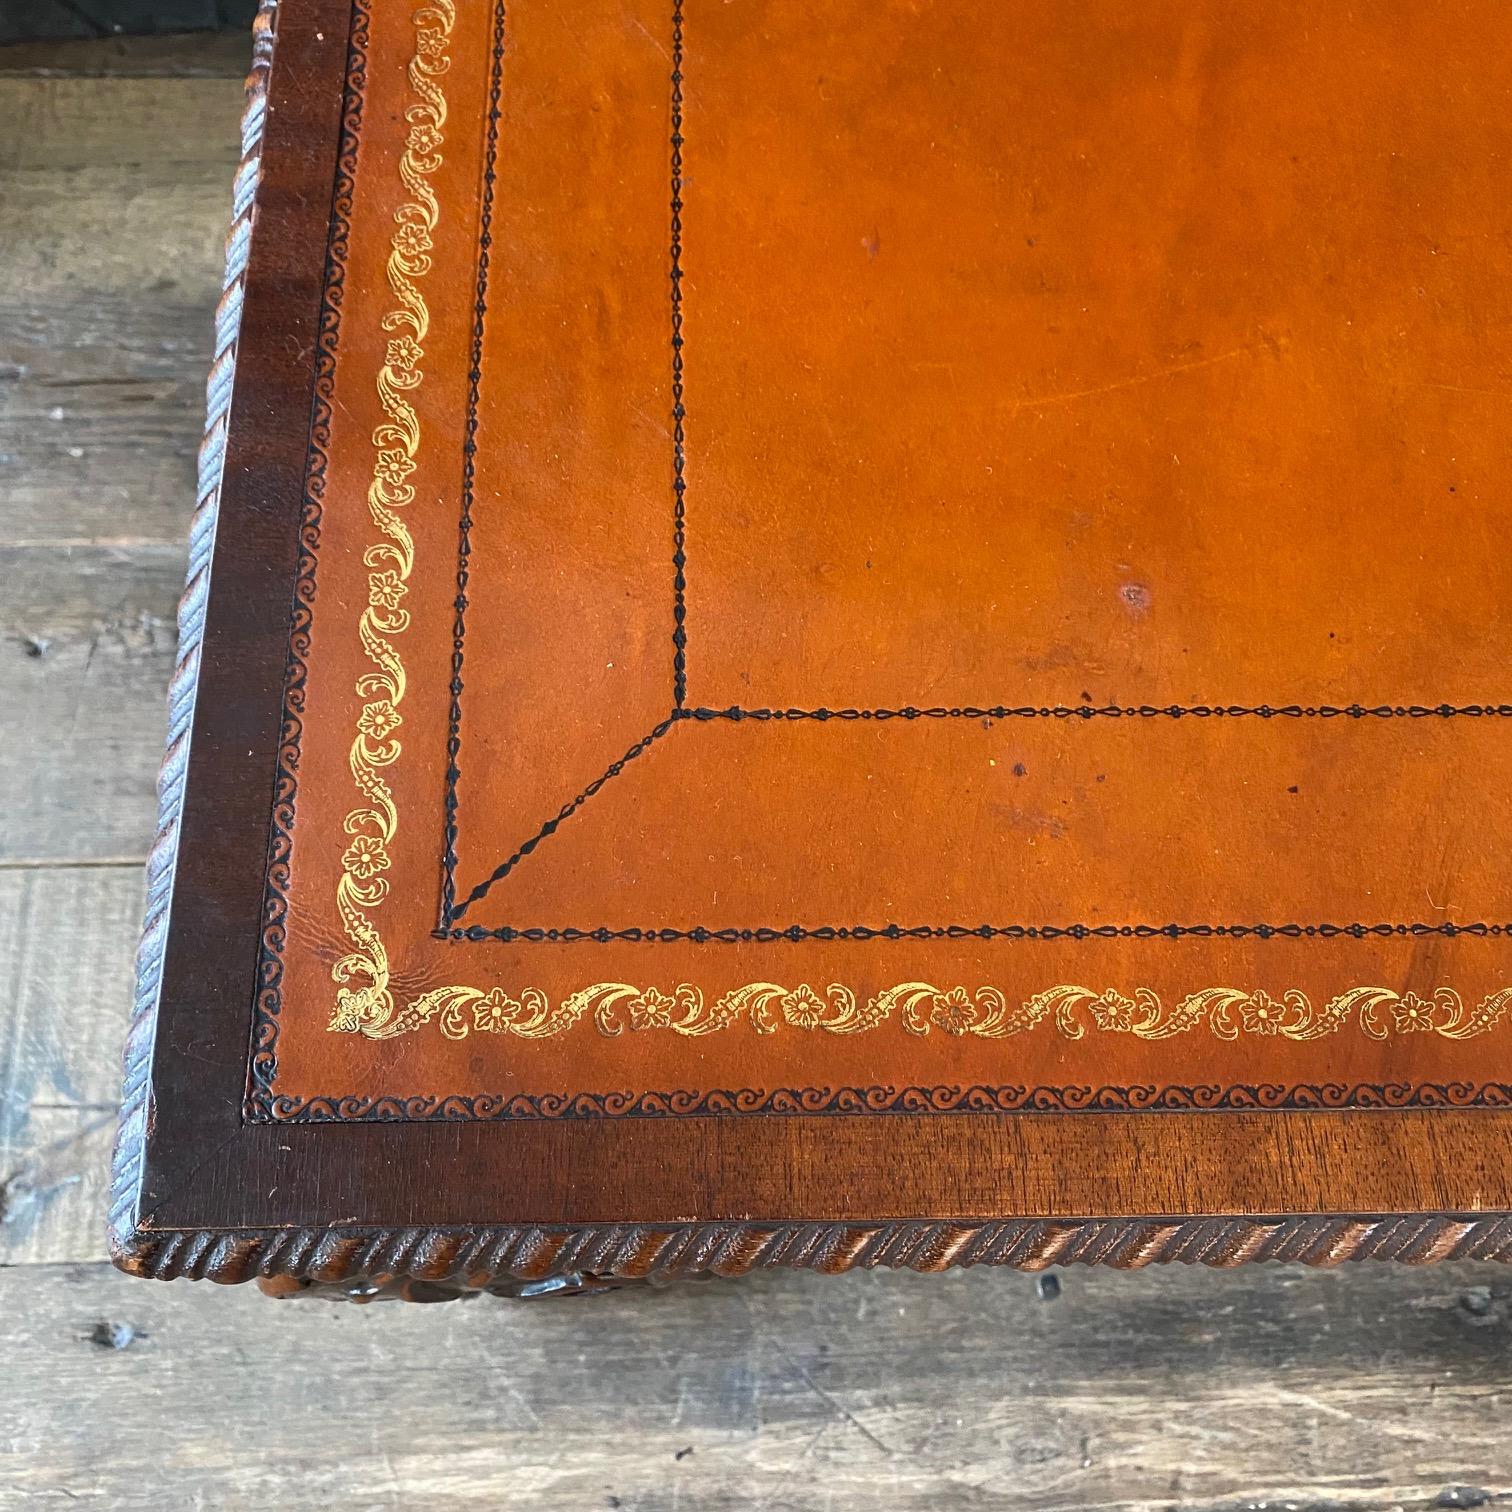 Magnifique table basse classique avec un beau plateau en cuir gaufré de couleur rouille dans le style boule et griffe britannique. 
#5876

